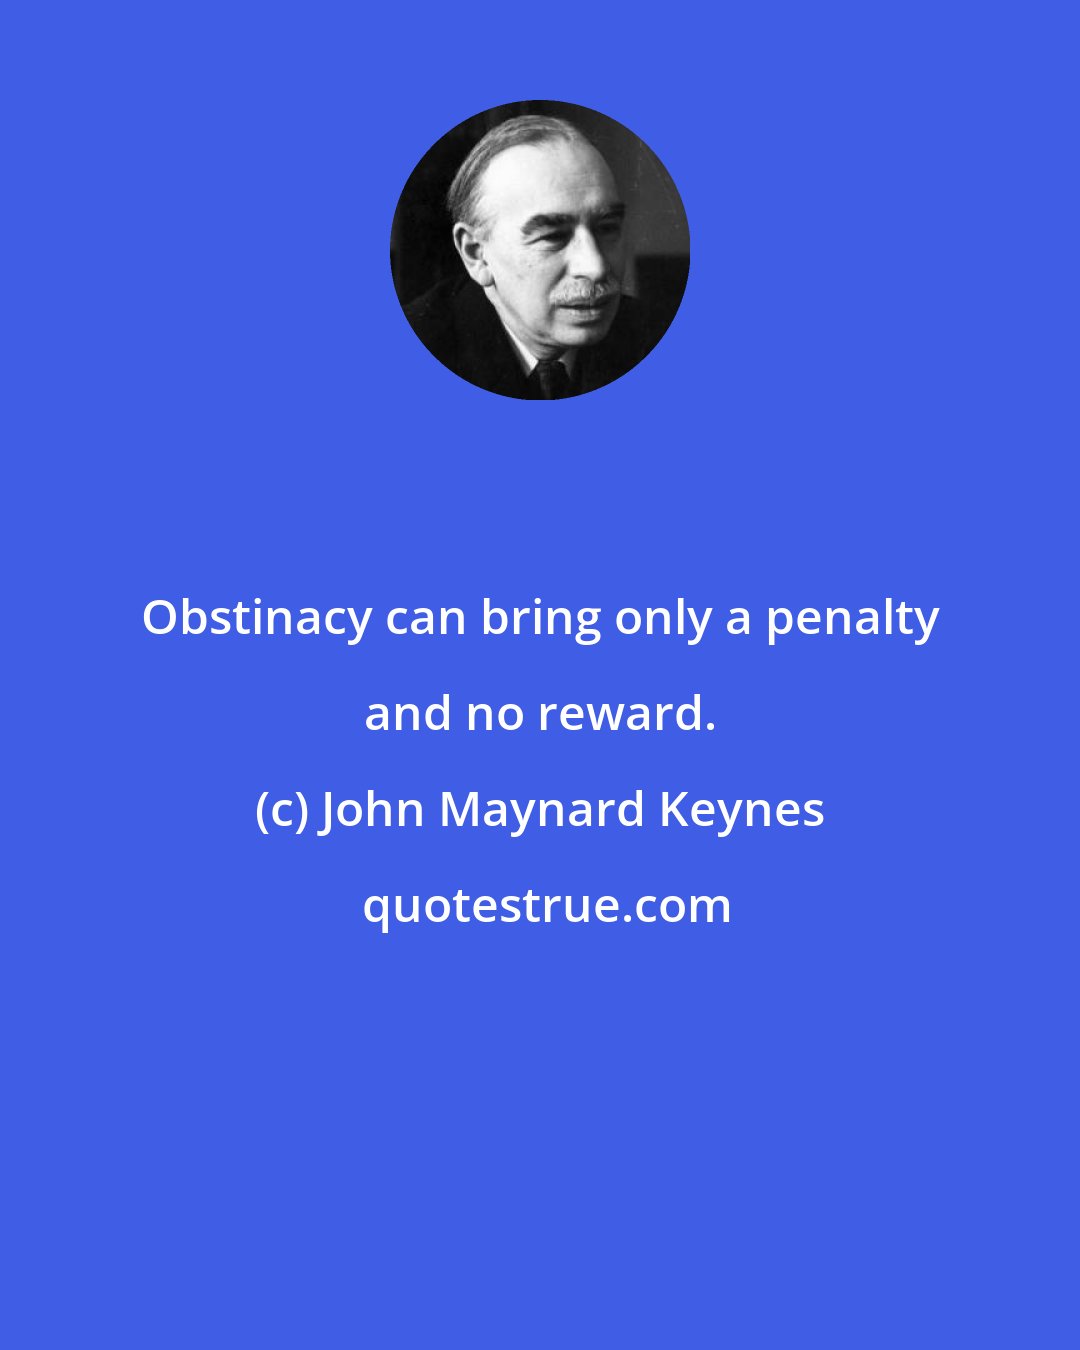 John Maynard Keynes: Obstinacy can bring only a penalty and no reward.